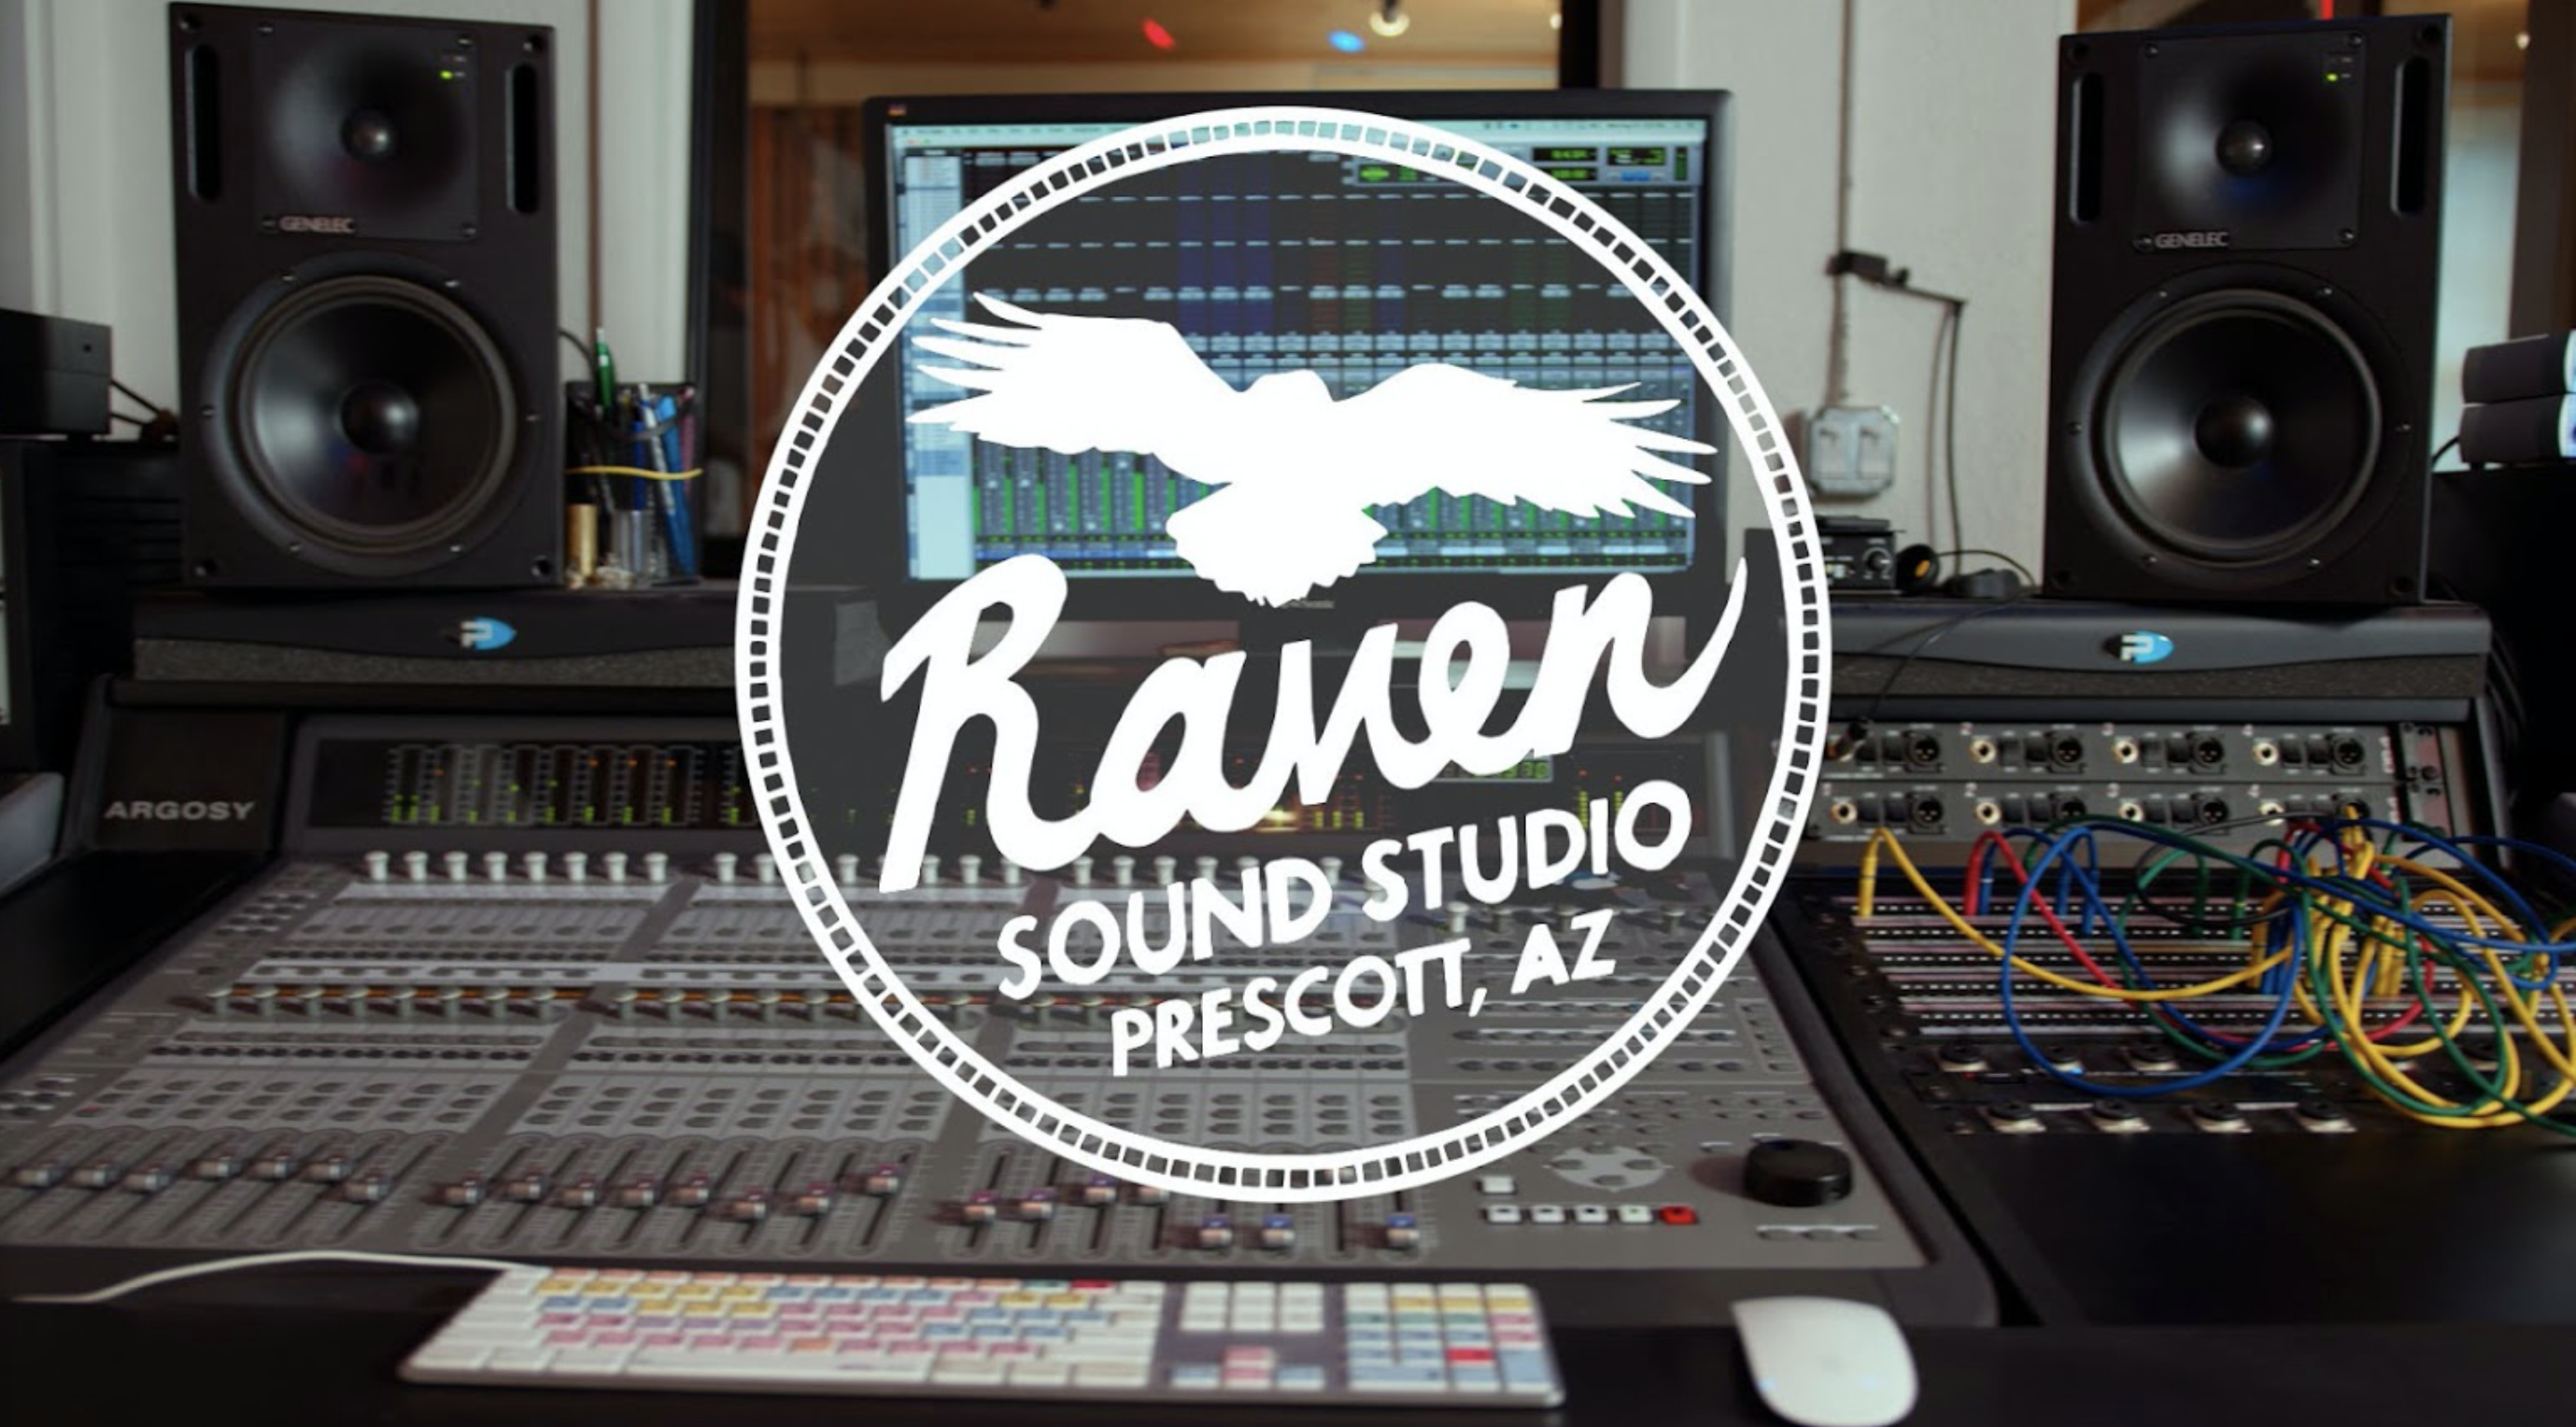 Raven Sound Studio Prescott, AZ 86303